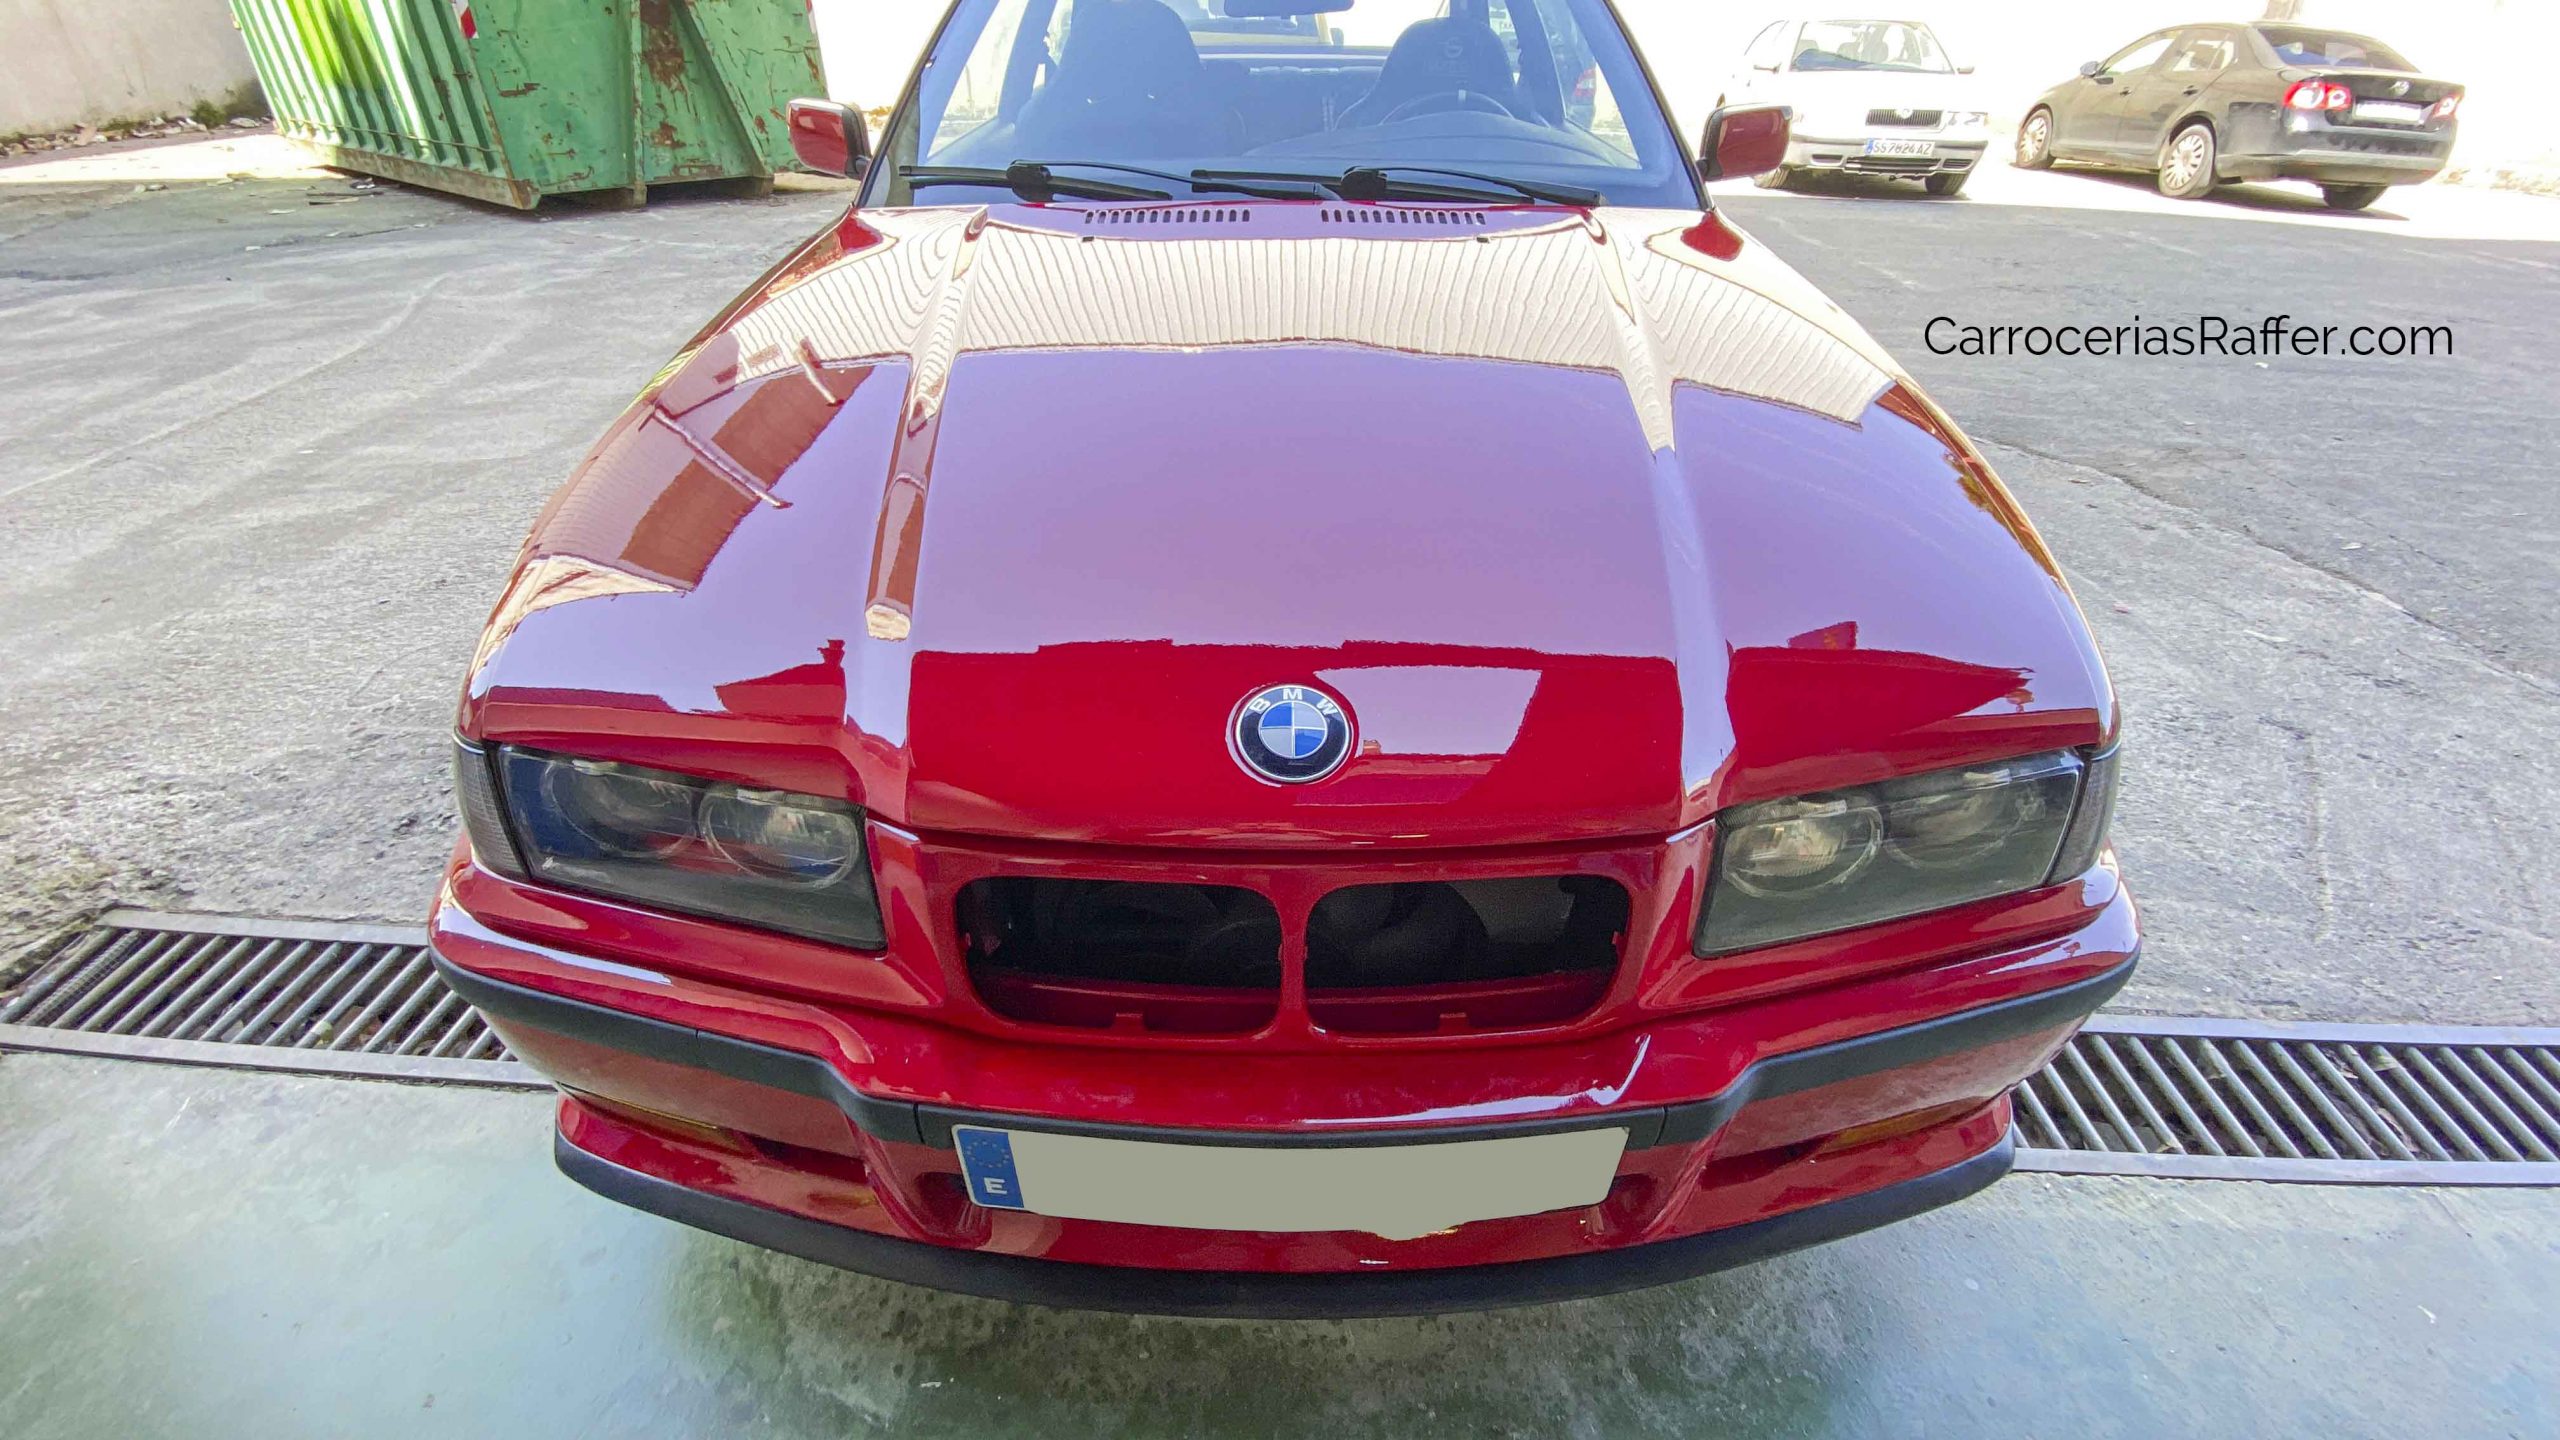 1 copia bmw e36 1993 coupé rojo carrocerias raffer taller de chapa y pintura hernani donostia gipuzkoa